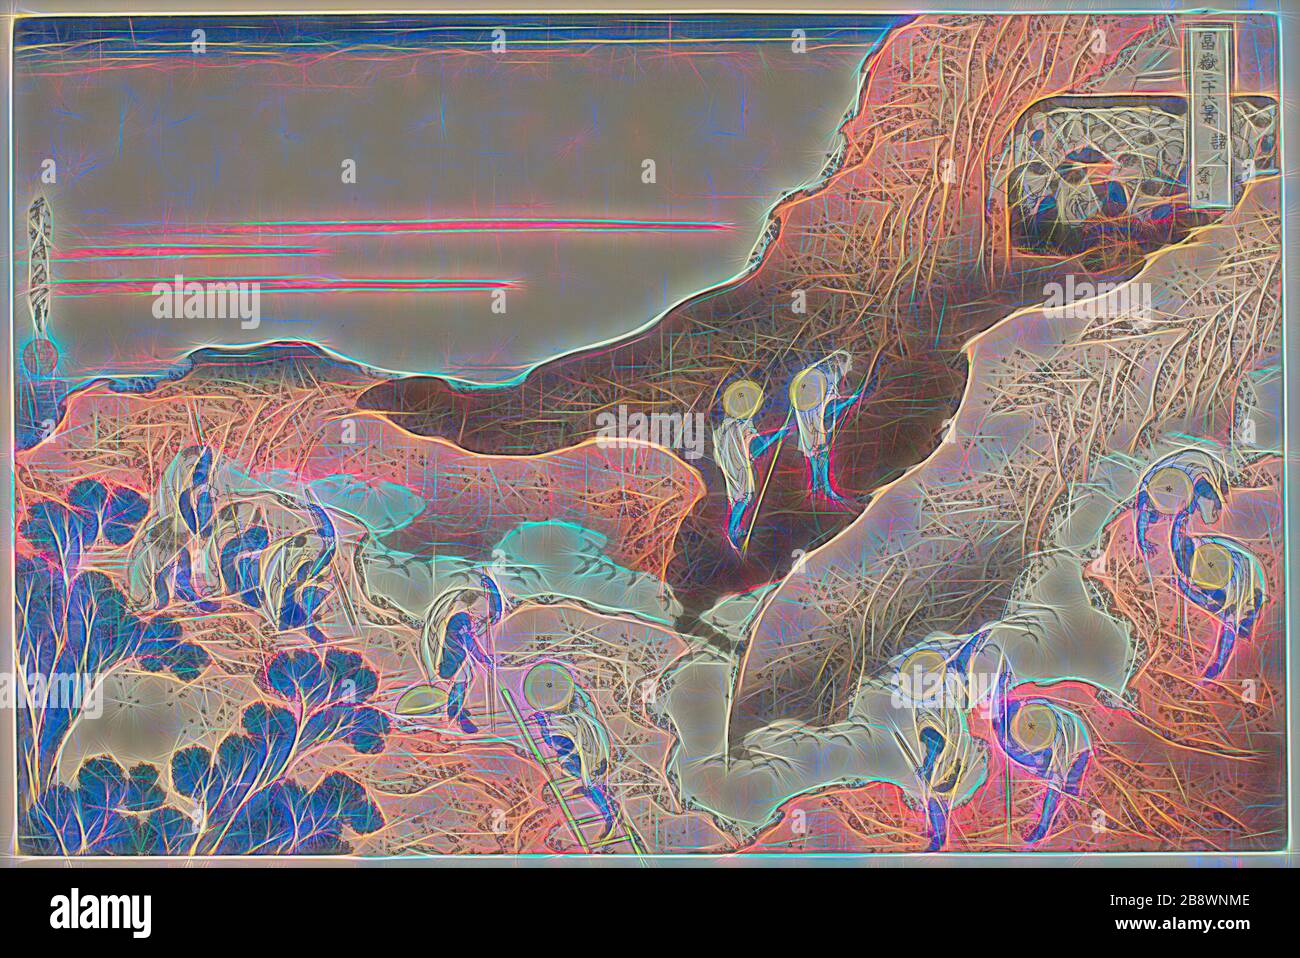 Gruppen von Bergsteigern (Shojin tozan), aus der Serie sechsunddreißig Ansichten des Fuji (Fugaku sanjurokkei), c 1830/33, Katsushika Hokusai ?? ??, Japanisch, 1760-1849, Herausgeber: Hibino Yohachi, Japanisch, unbekannt, Japan, Farbholzschnittdruck, oban, 24,6 x 37 cm (9 5/8 x 14 9/16 Zoll), von Gibon neu vorgestellt, Design von warmem, fröhlichem Leuchten von Helligkeit und Lichtstrahlen. Klassische Kunst mit moderner Note neu erfunden. Fotografie, inspiriert vom Futurismus, die dynamische Energie moderner Technologie, Bewegung, Geschwindigkeit und Kultur revolutionieren. Stockfoto